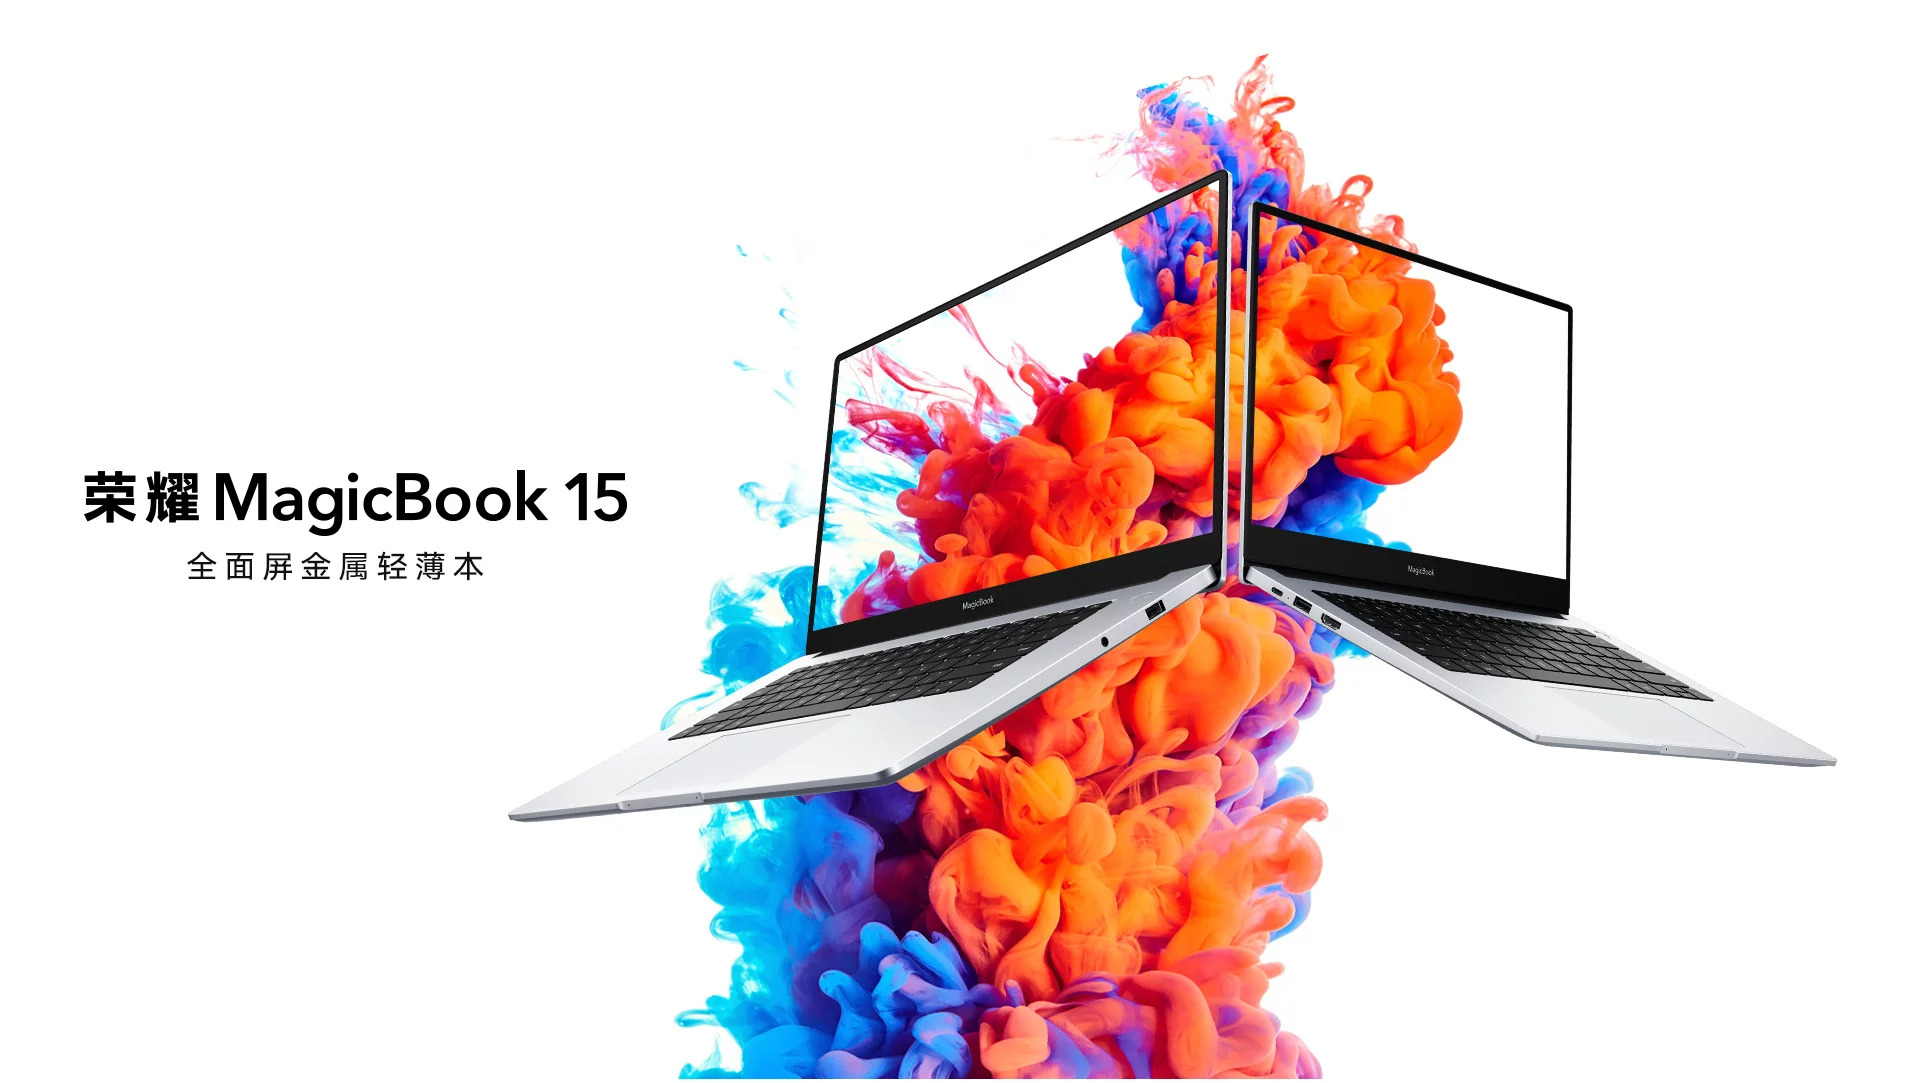 Honor ra mắt laptop MagicBook 15, chạy chip Intel thế hệ 10 cùng với GPU từ Nvidia